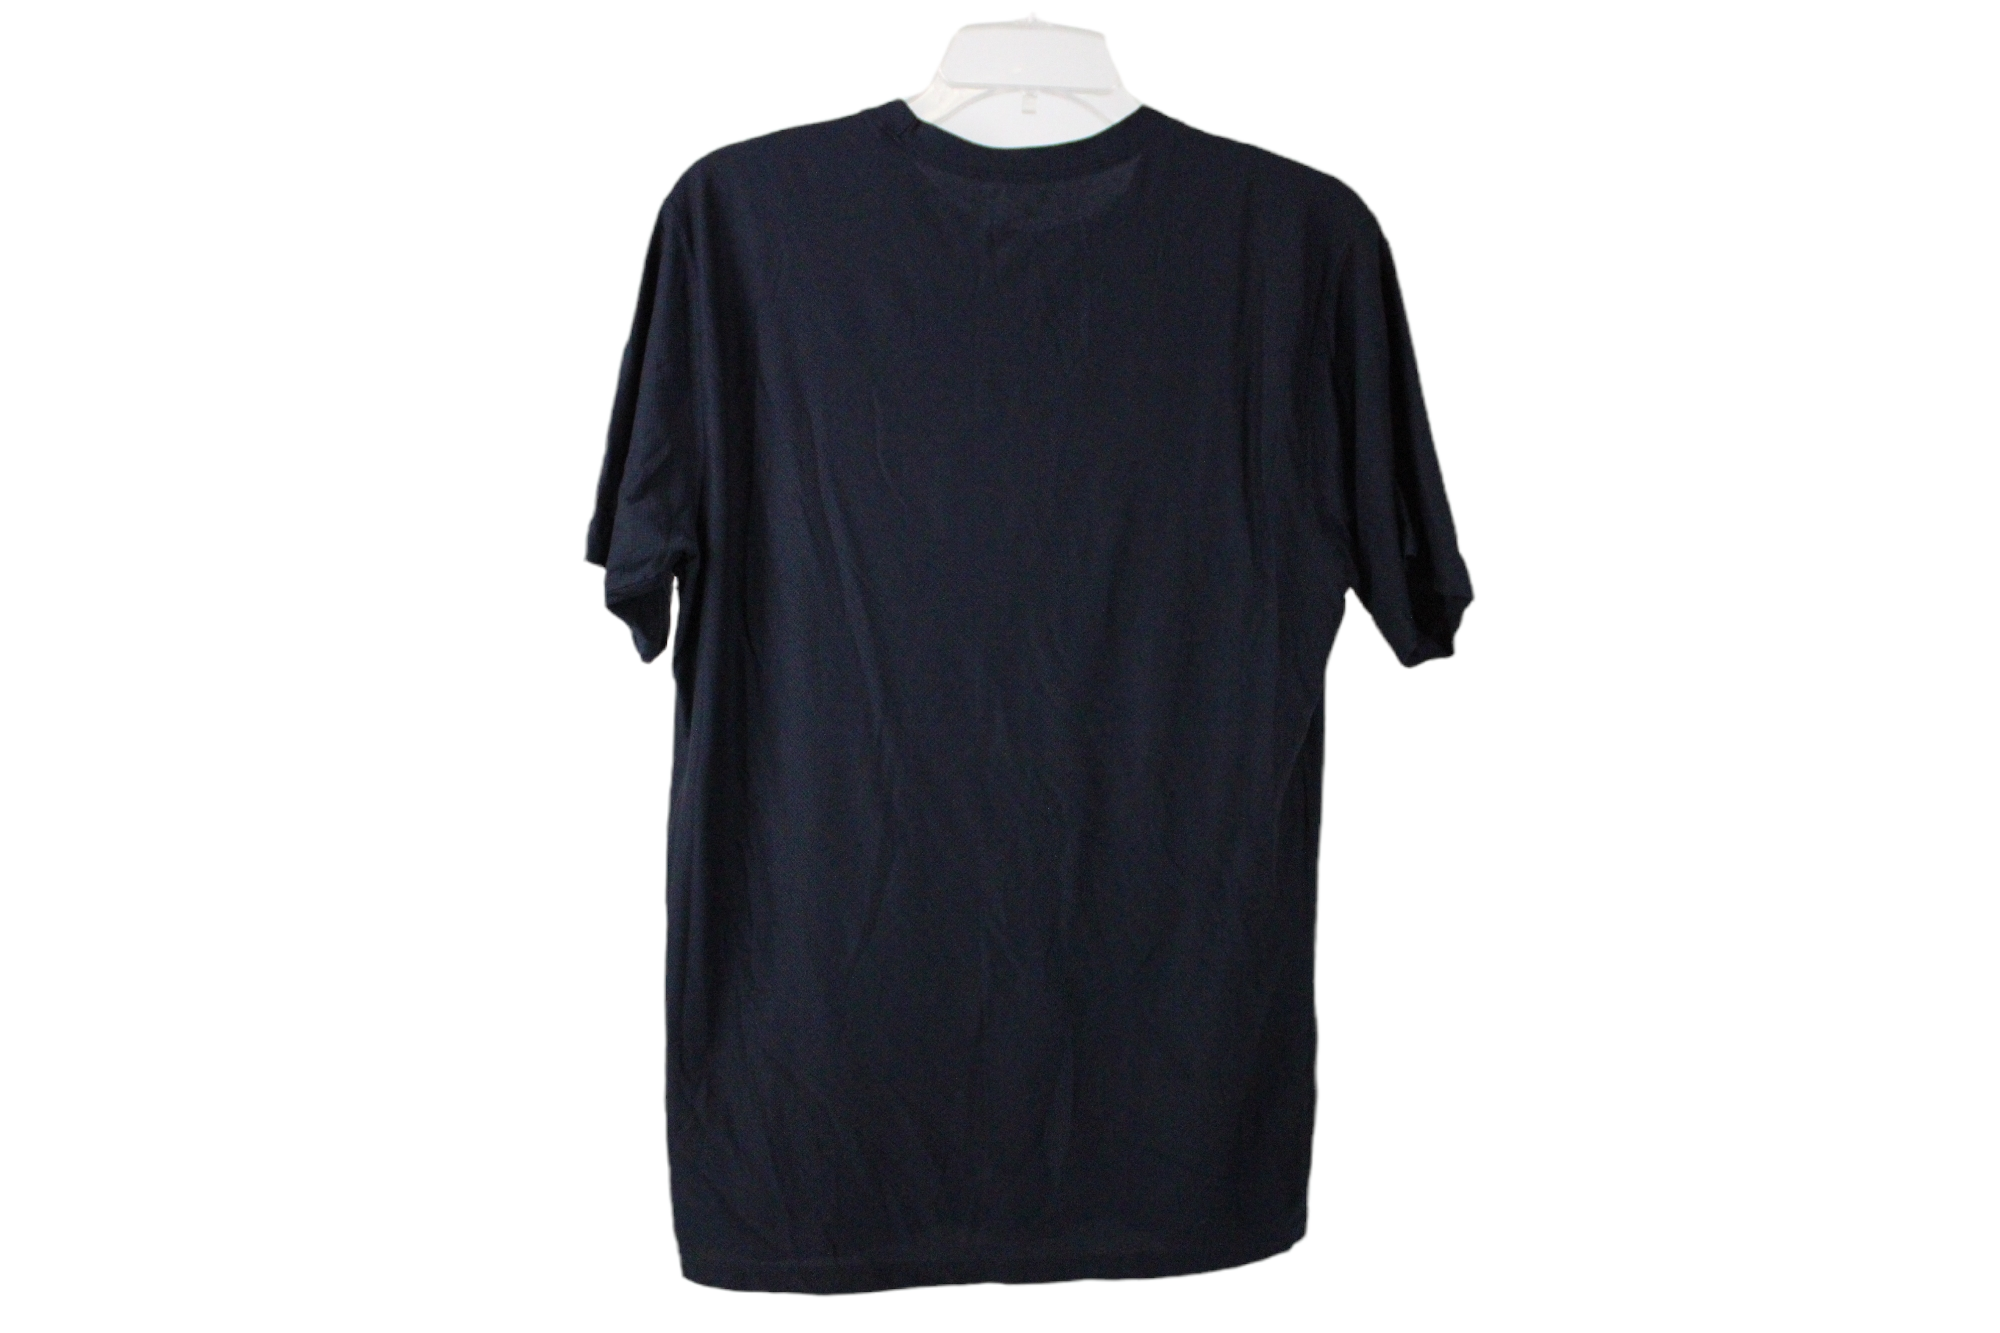 Exfficio Dark Blue Lightweight Shirt | L